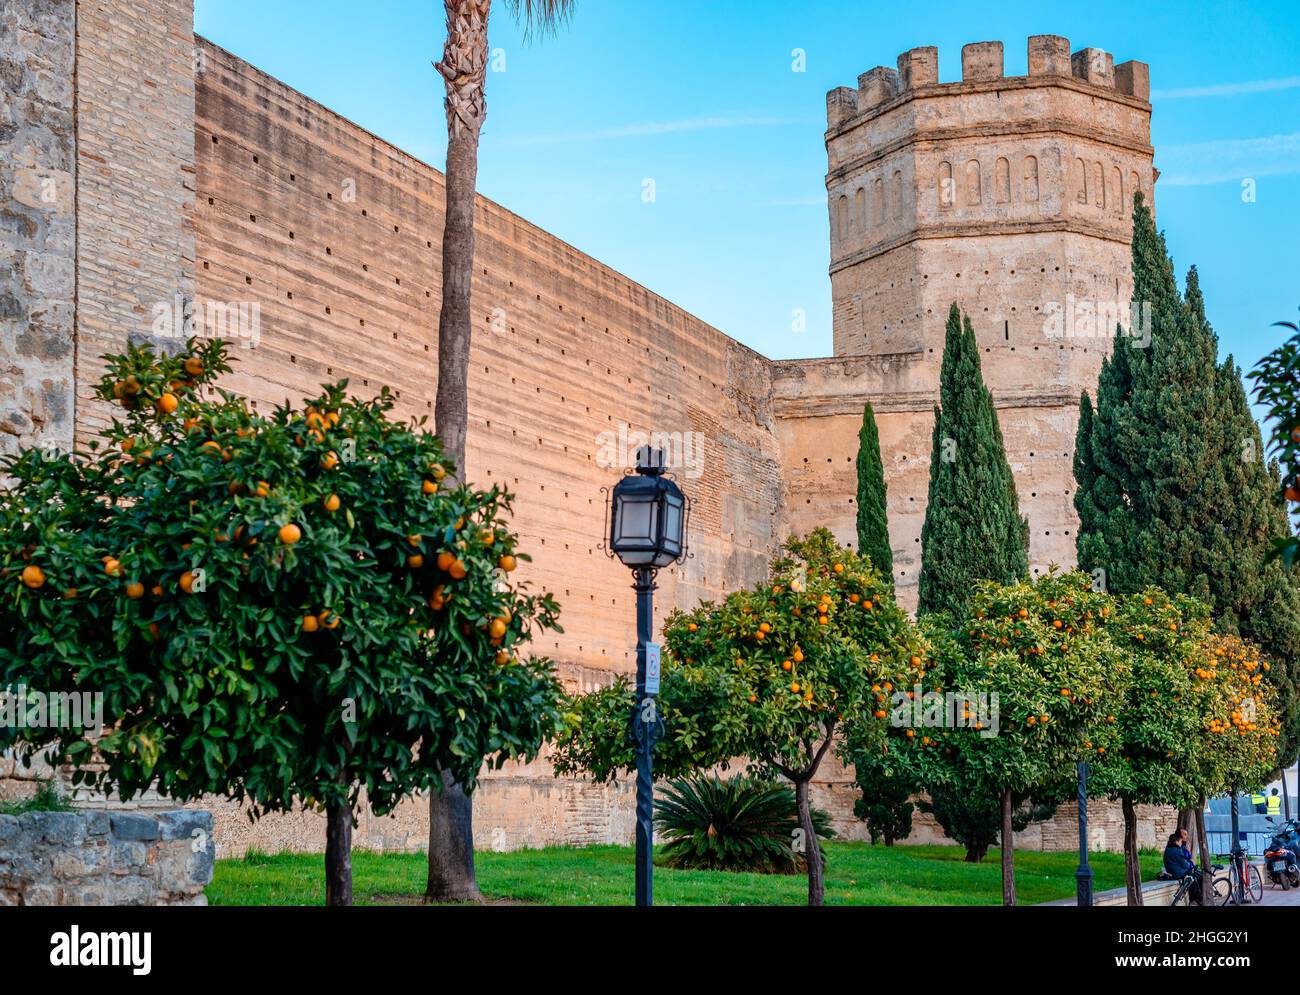 La torre ottagonale e le mura della vecchia Alcazar moresca che oggi ospita un parco.Jerez de la Frontera, Andalusia, Spagna. Foto Stock